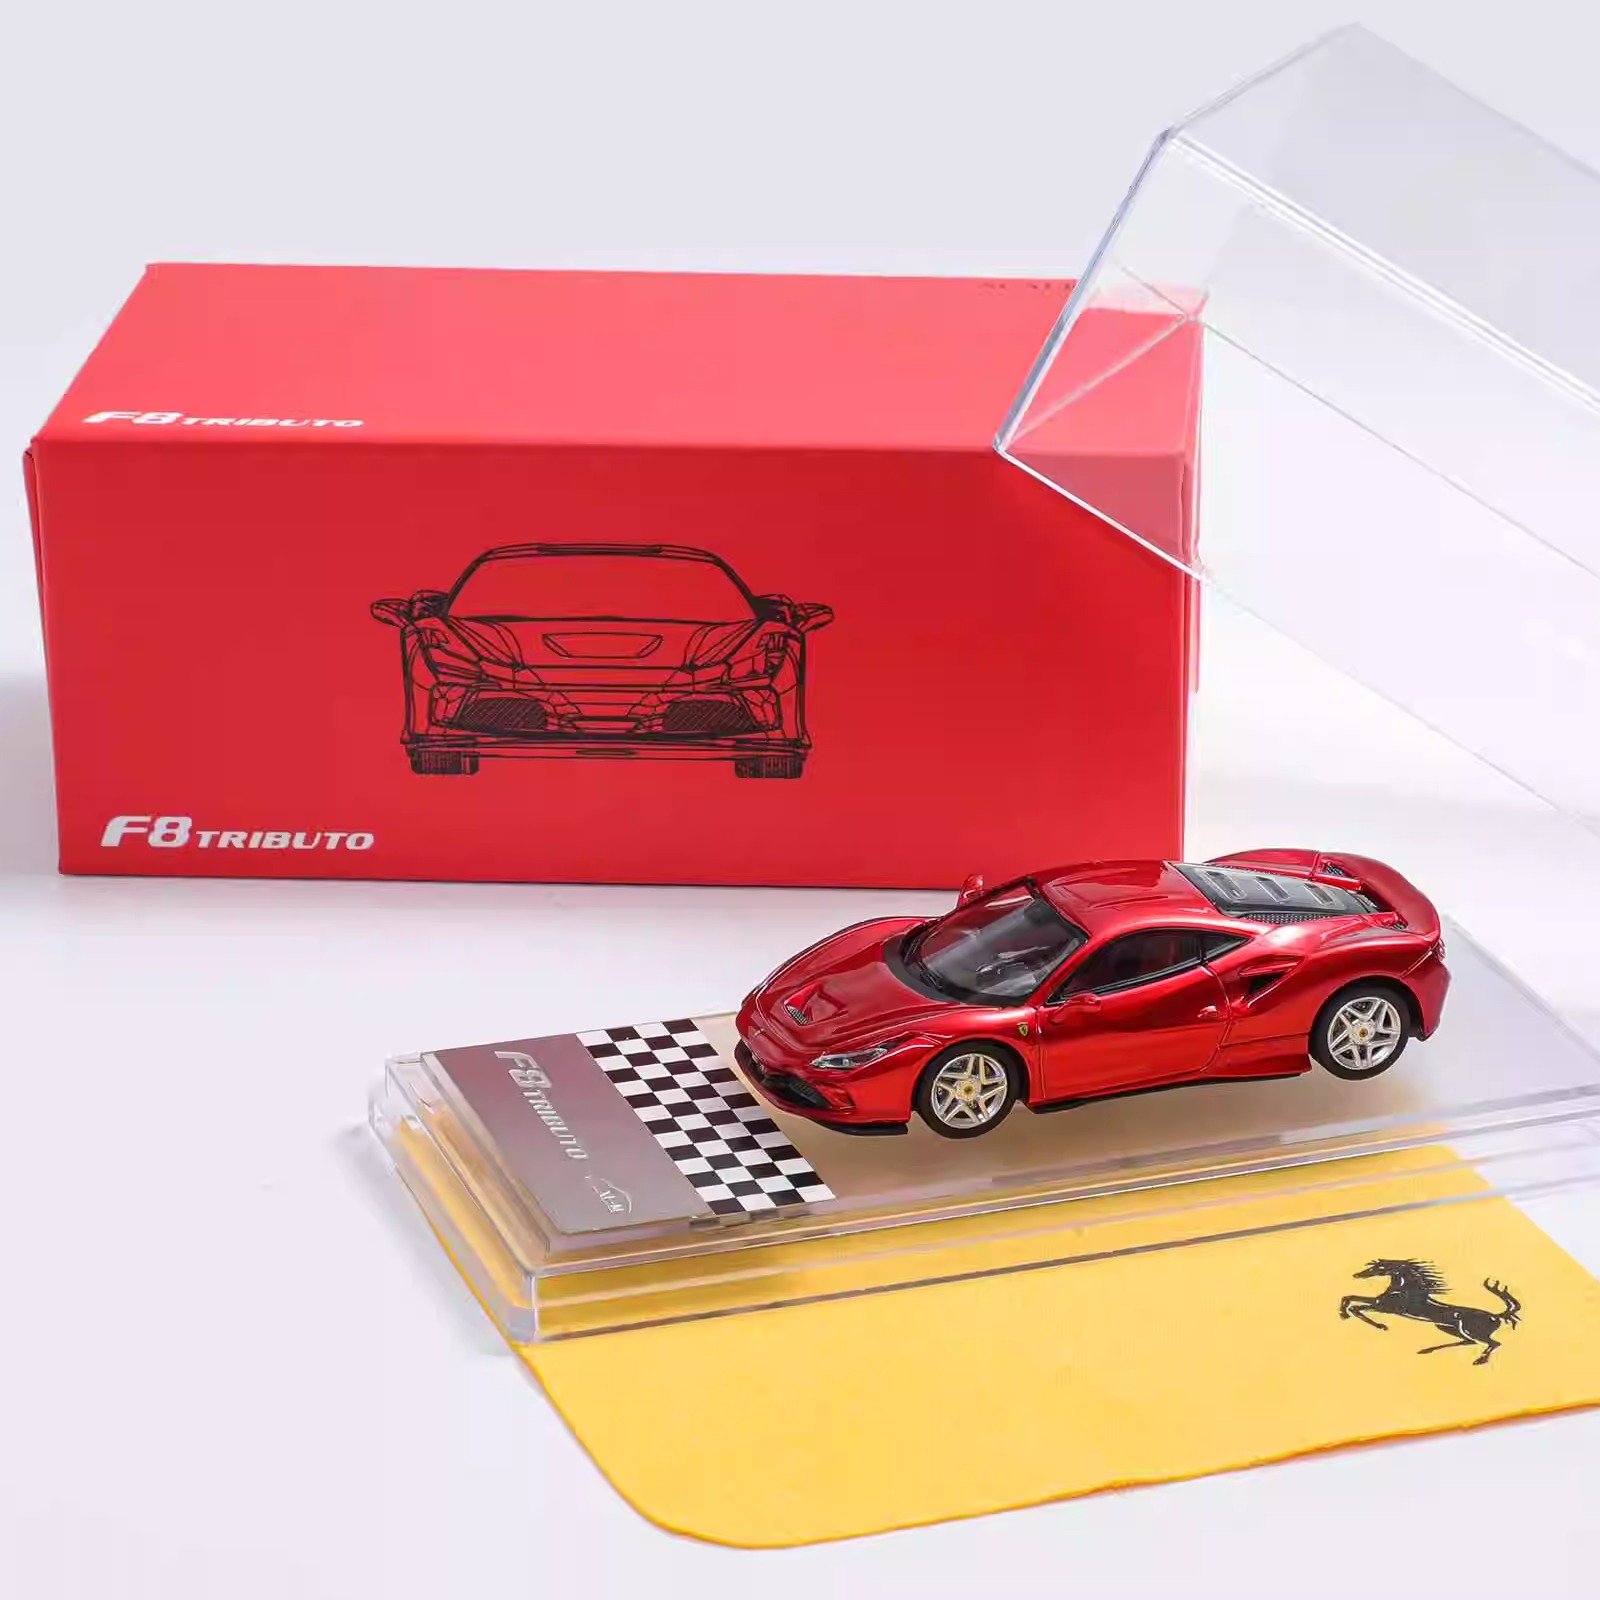 XF Ferrari F8 Tributo 限量版仿真合金 汽车模型 1:64